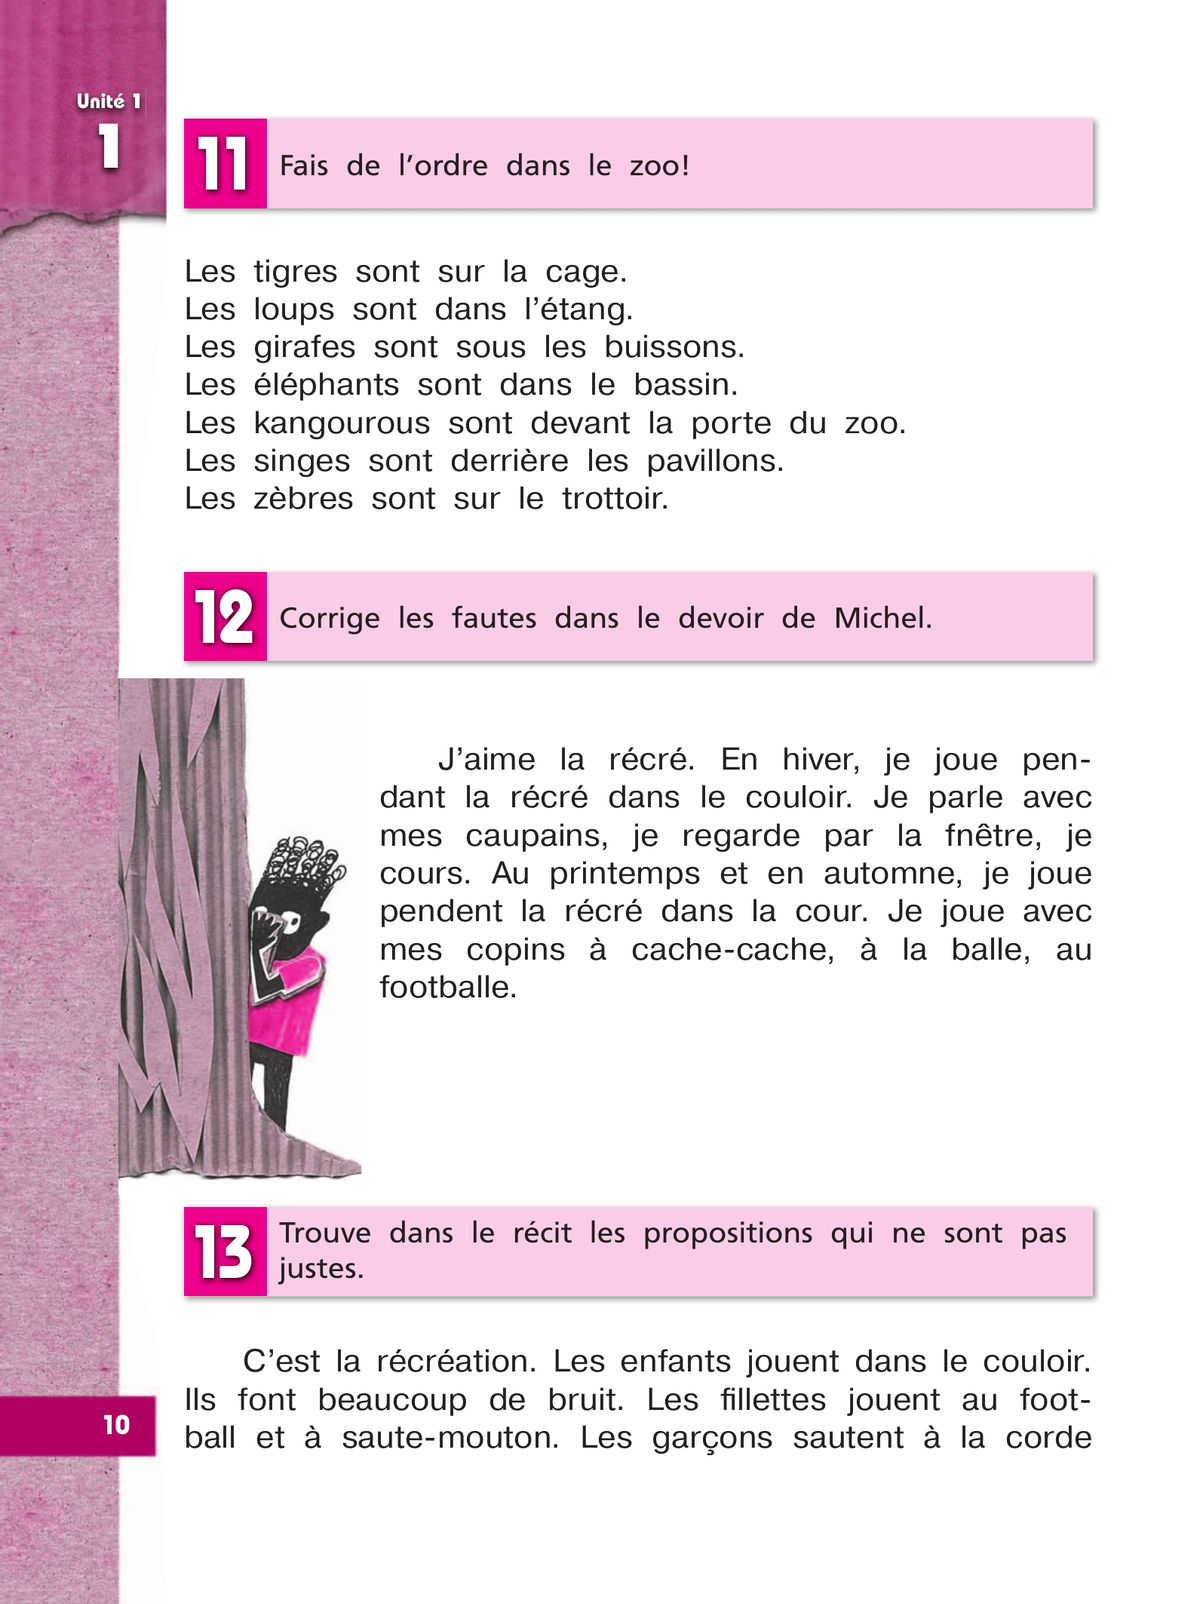 Французский язык. Рабочая тетрадь. 4 класс. Углубленный уровень 6